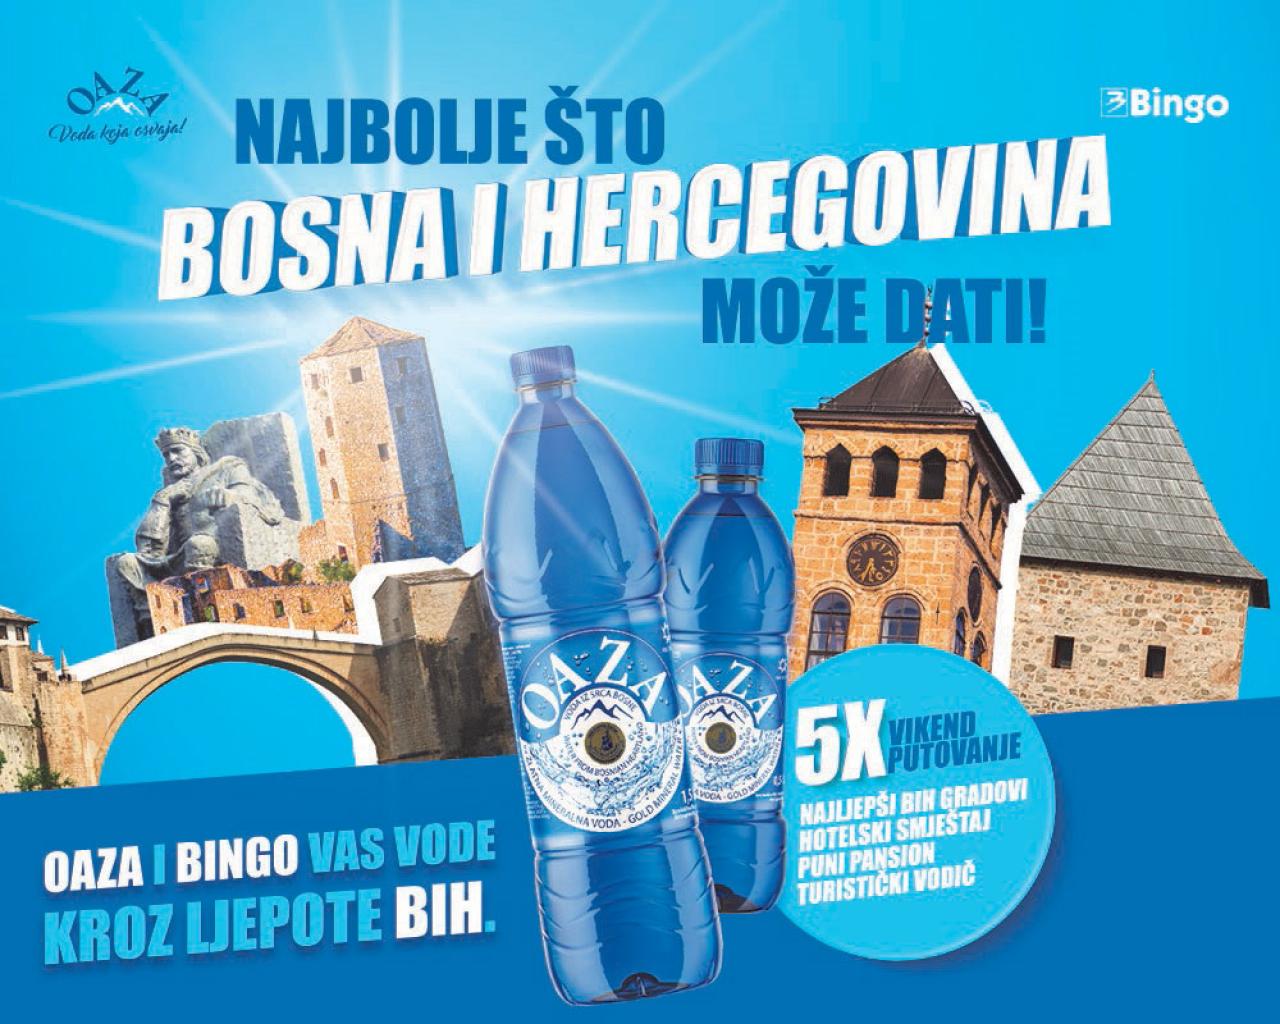 Oaza i Bingo vas vode kroz ljepote Bosne i Hercegovine - Oaza i Bingo vas vode kroz ljepote Bosne i Hercegovine